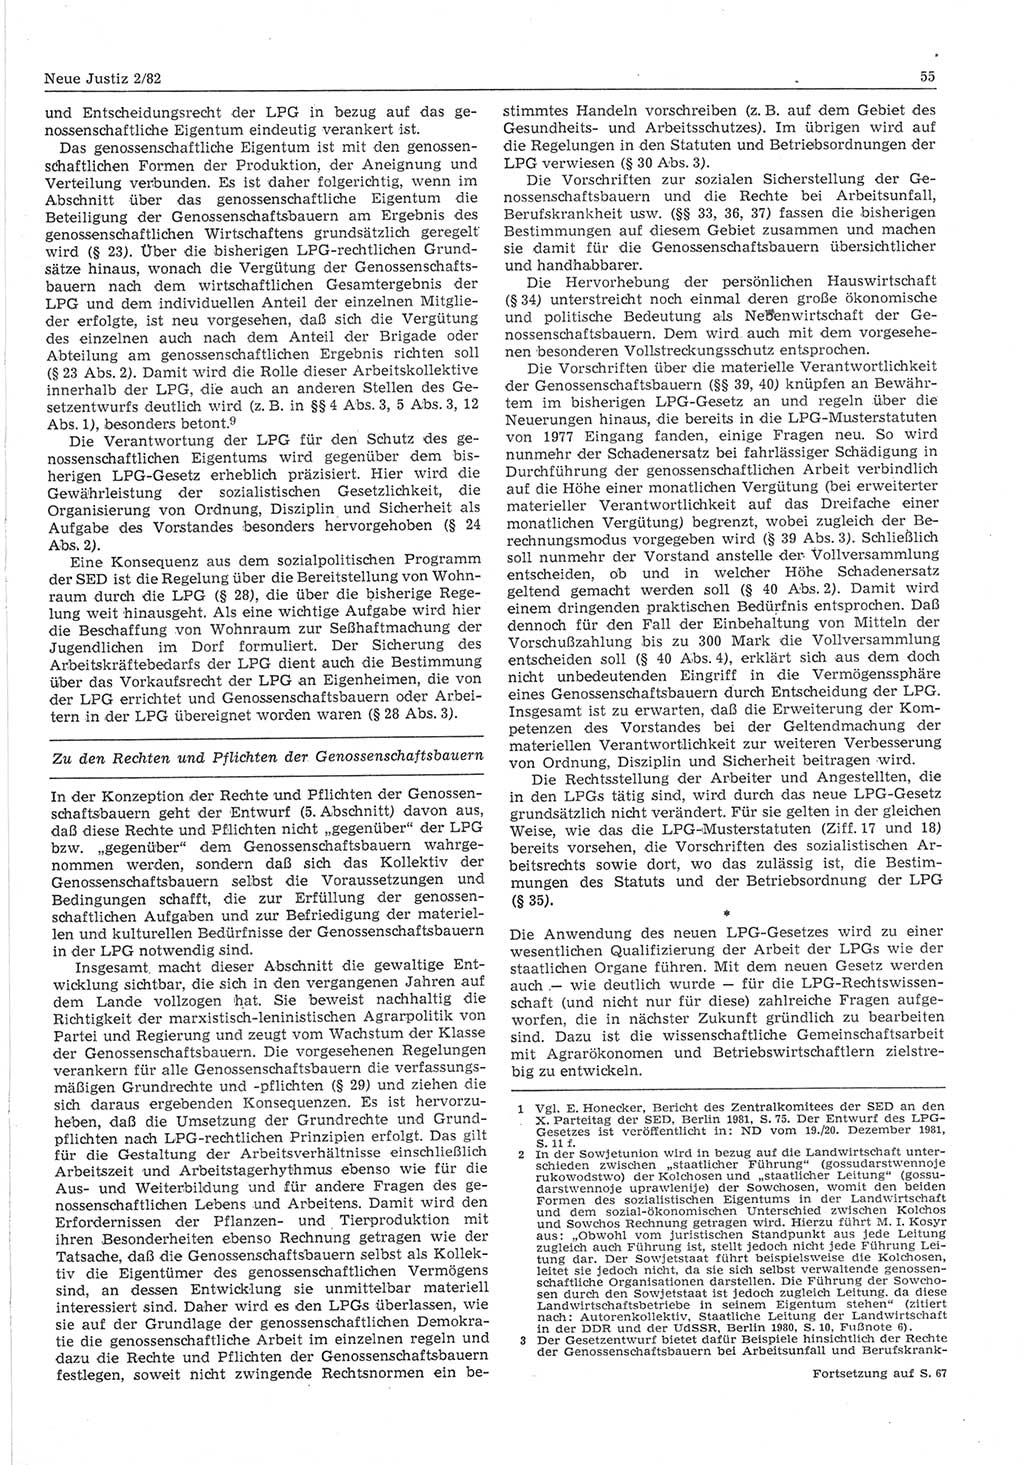 Neue Justiz (NJ), Zeitschrift für sozialistisches Recht und Gesetzlichkeit [Deutsche Demokratische Republik (DDR)], 36. Jahrgang 1982, Seite 55 (NJ DDR 1982, S. 55)